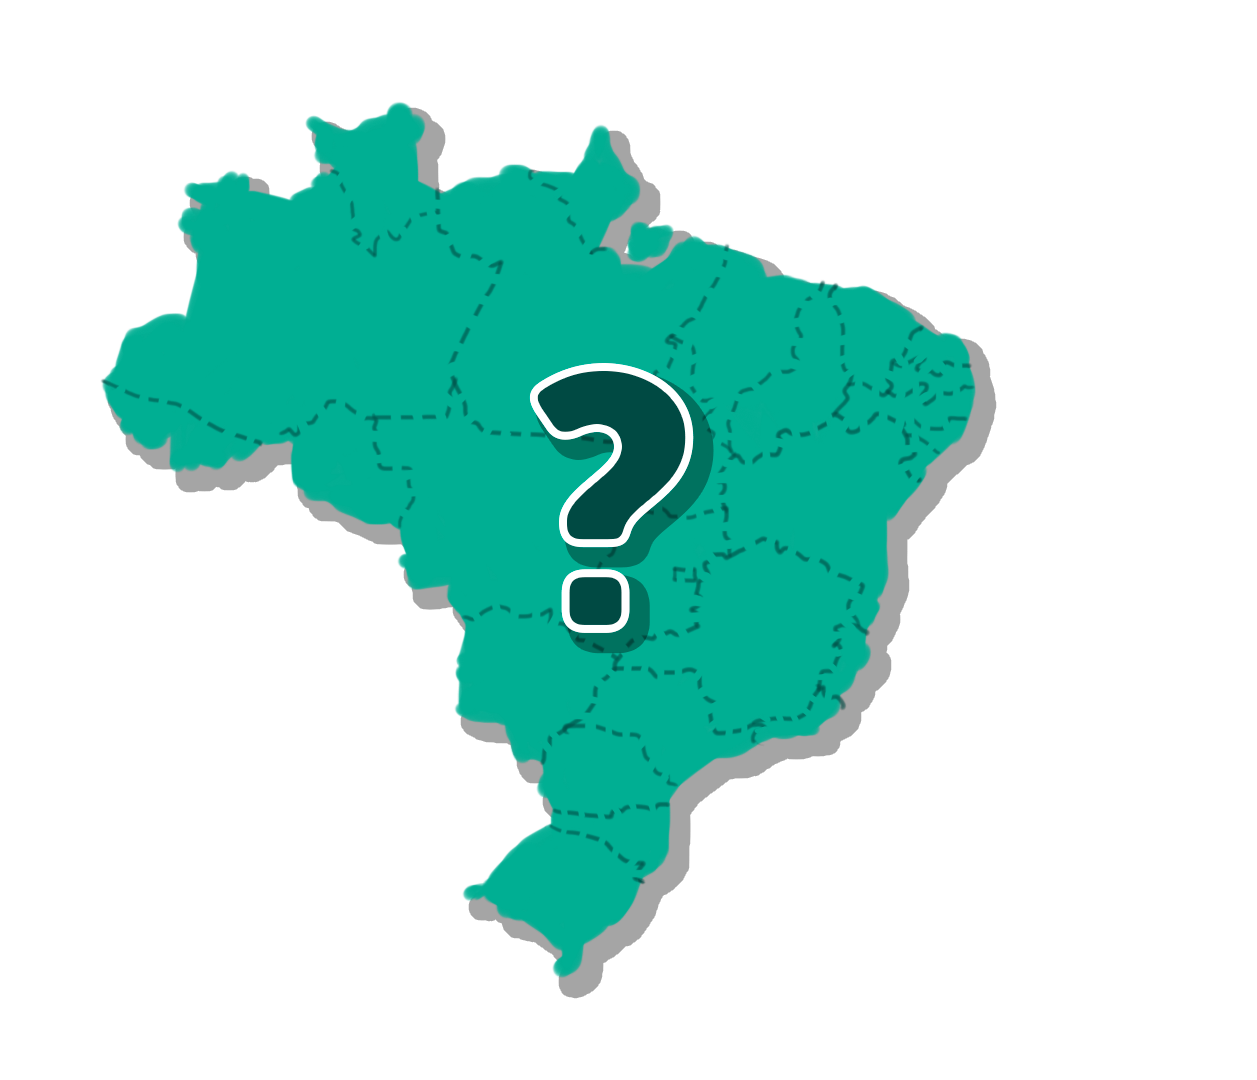 Pack Estados Brasileiros - Educa Market